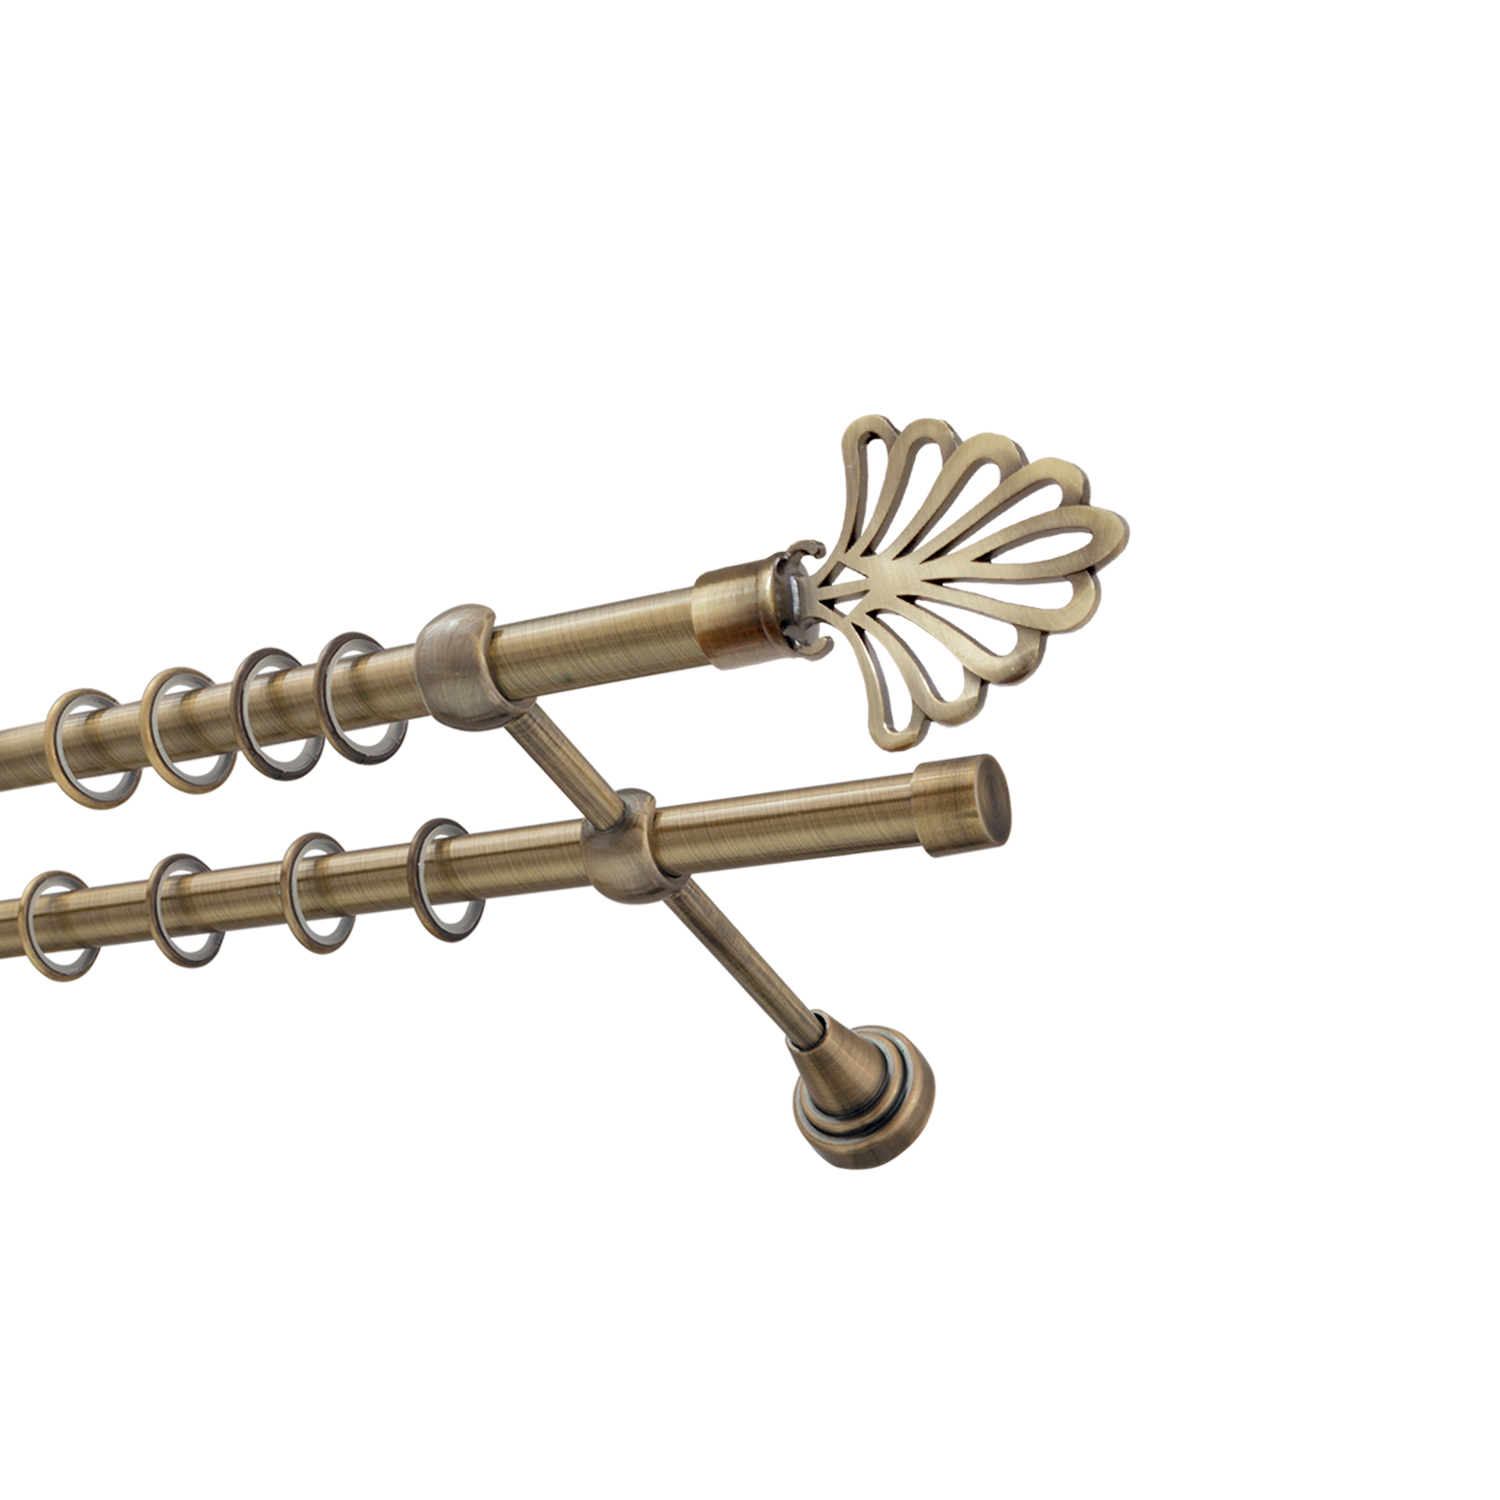 Металлический карниз для штор Бутик, двухрядный 16/16 мм, бронза, гладкая штанга, длина 200 см - фото Wikidecor.ru